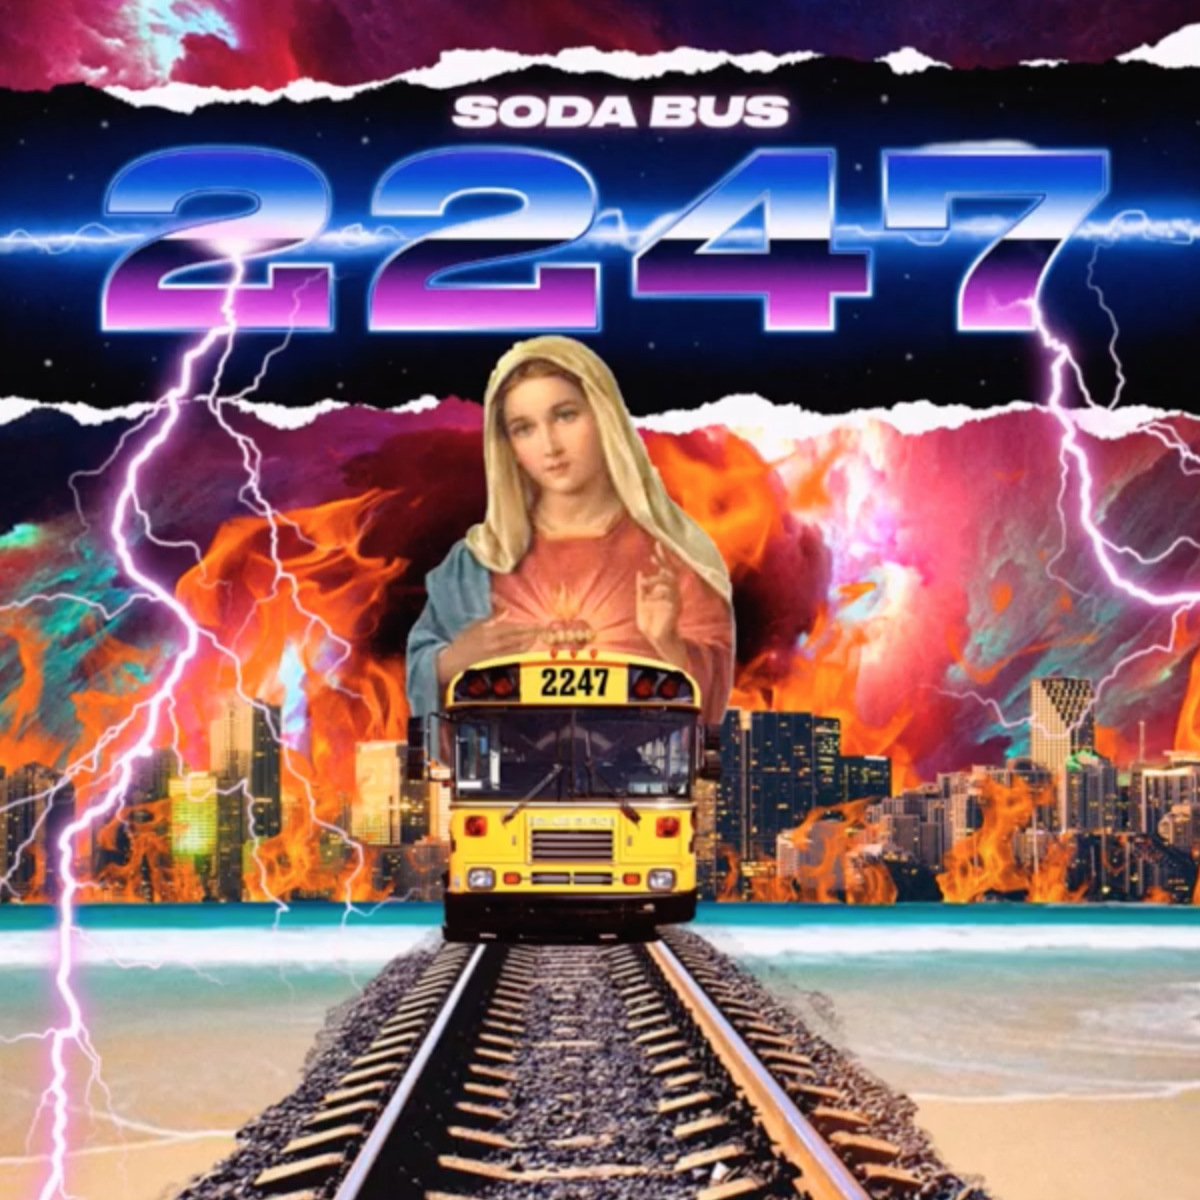 94. Soda Bus - ep 2247